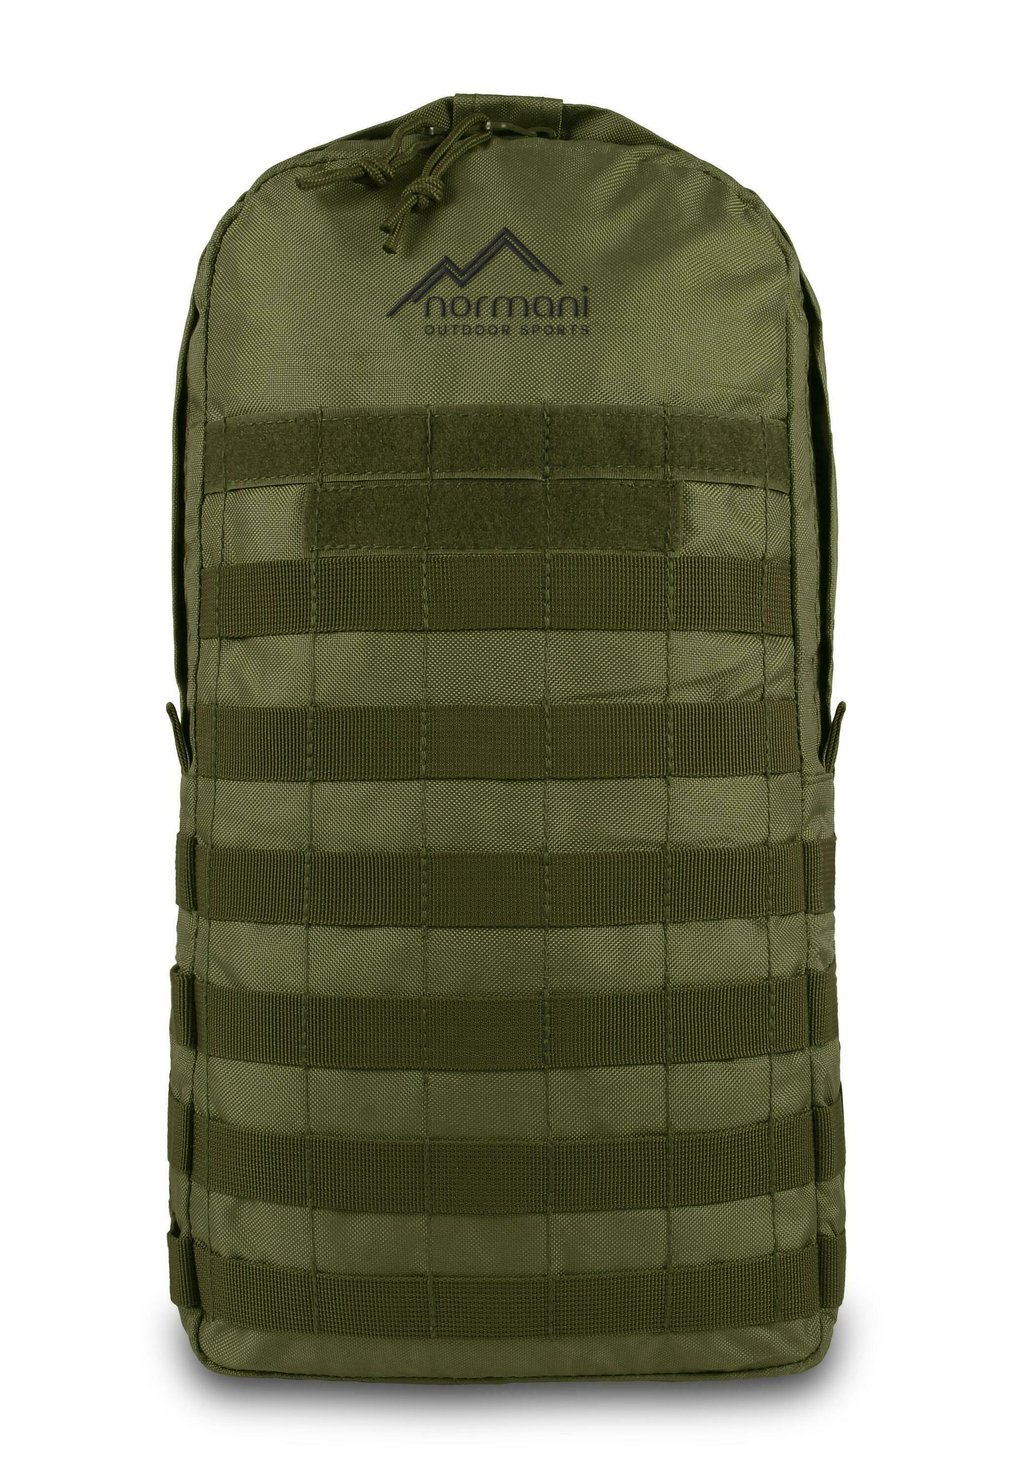 Треккинговый рюкзак BARRACUDA 8L DAYPACK normani Outdoor Sports, цвет oliv цена и фото